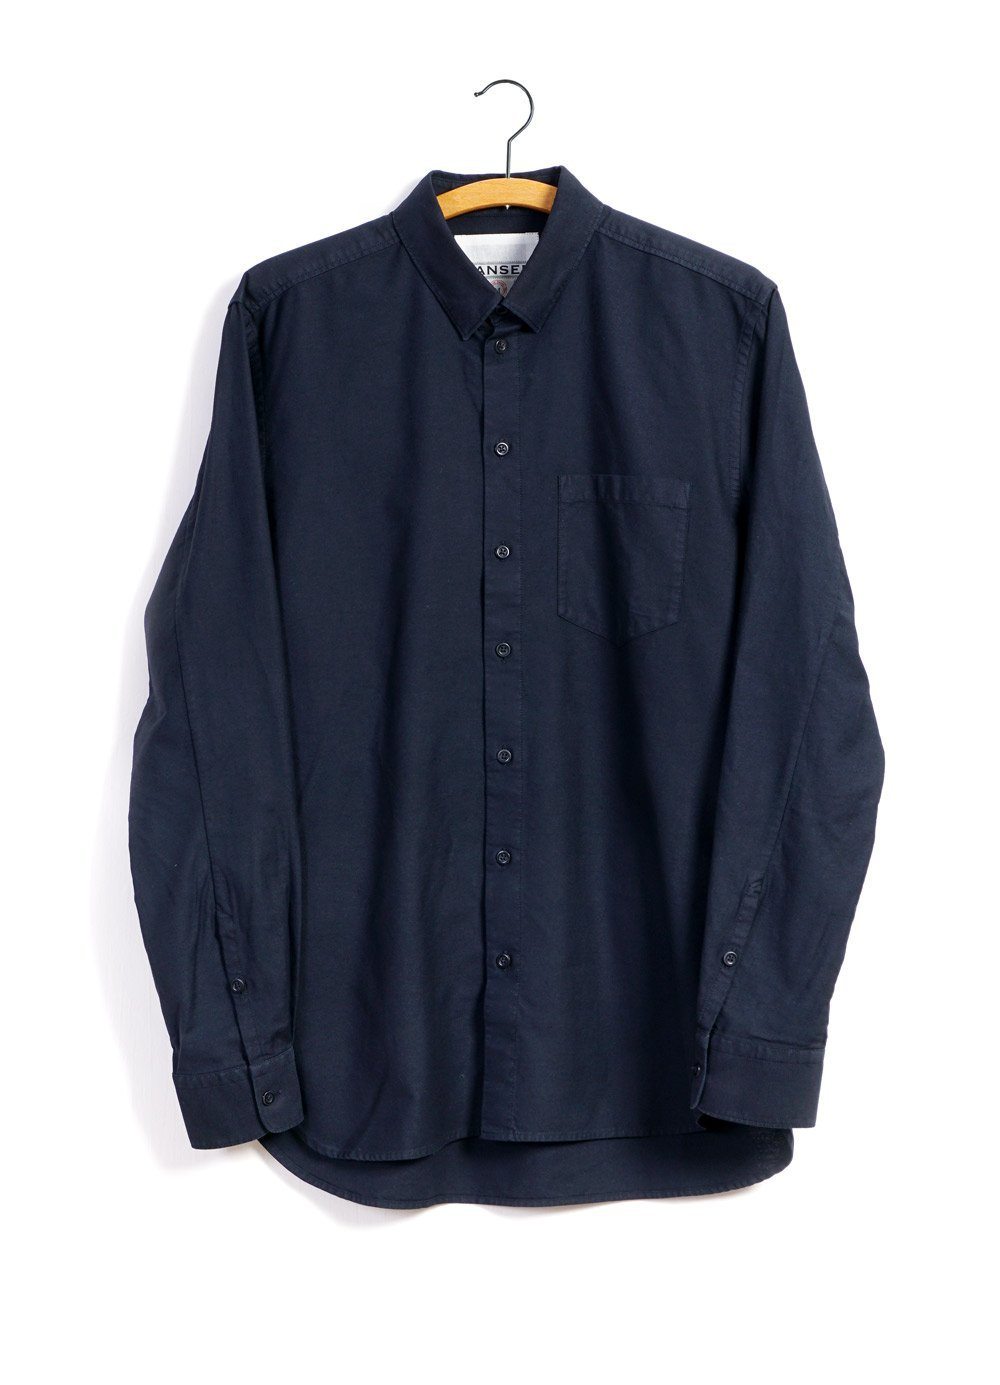 HANSEN Garments - HAAKON | Hidden Button Down Shirt | Navy - HANSEN Garments